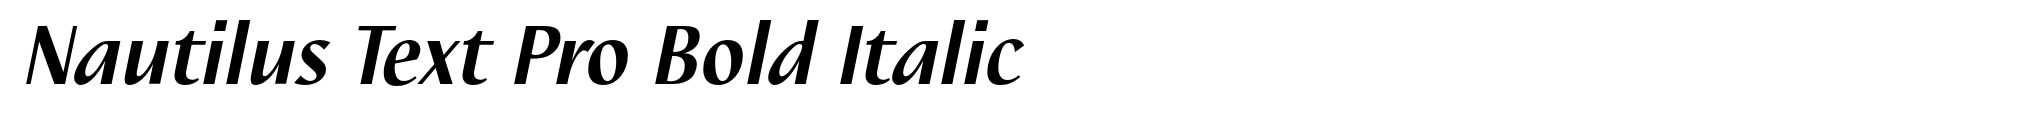 Nautilus Text Pro Bold Italic image